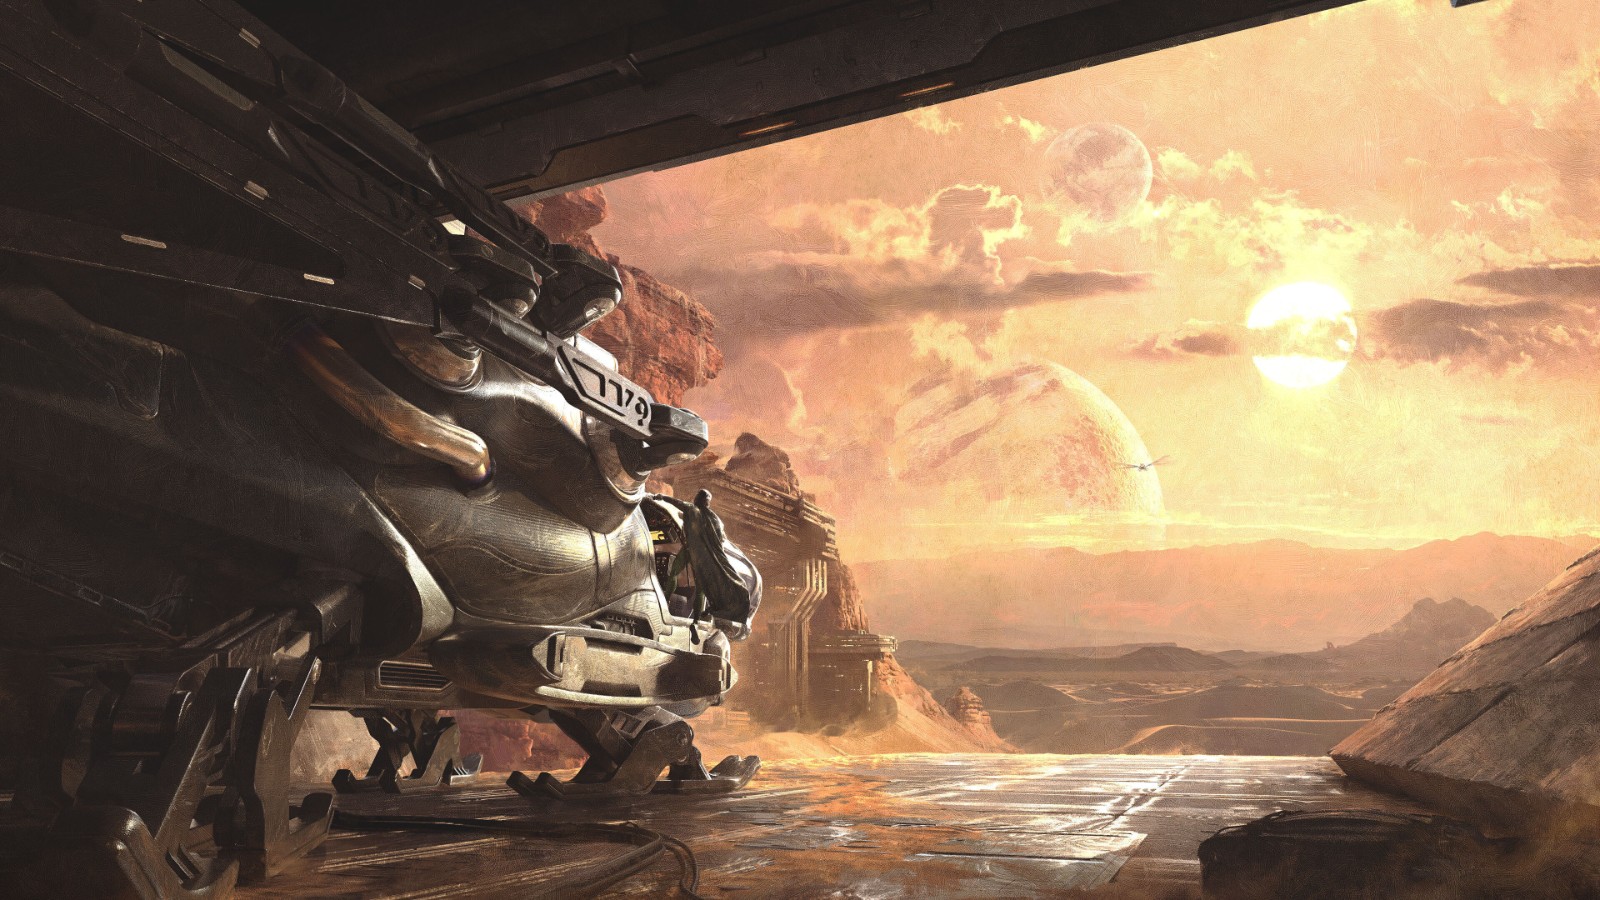 《沙丘》主题开放世界游戏概念艺术图曝光 目前尚未公布具体发行日期